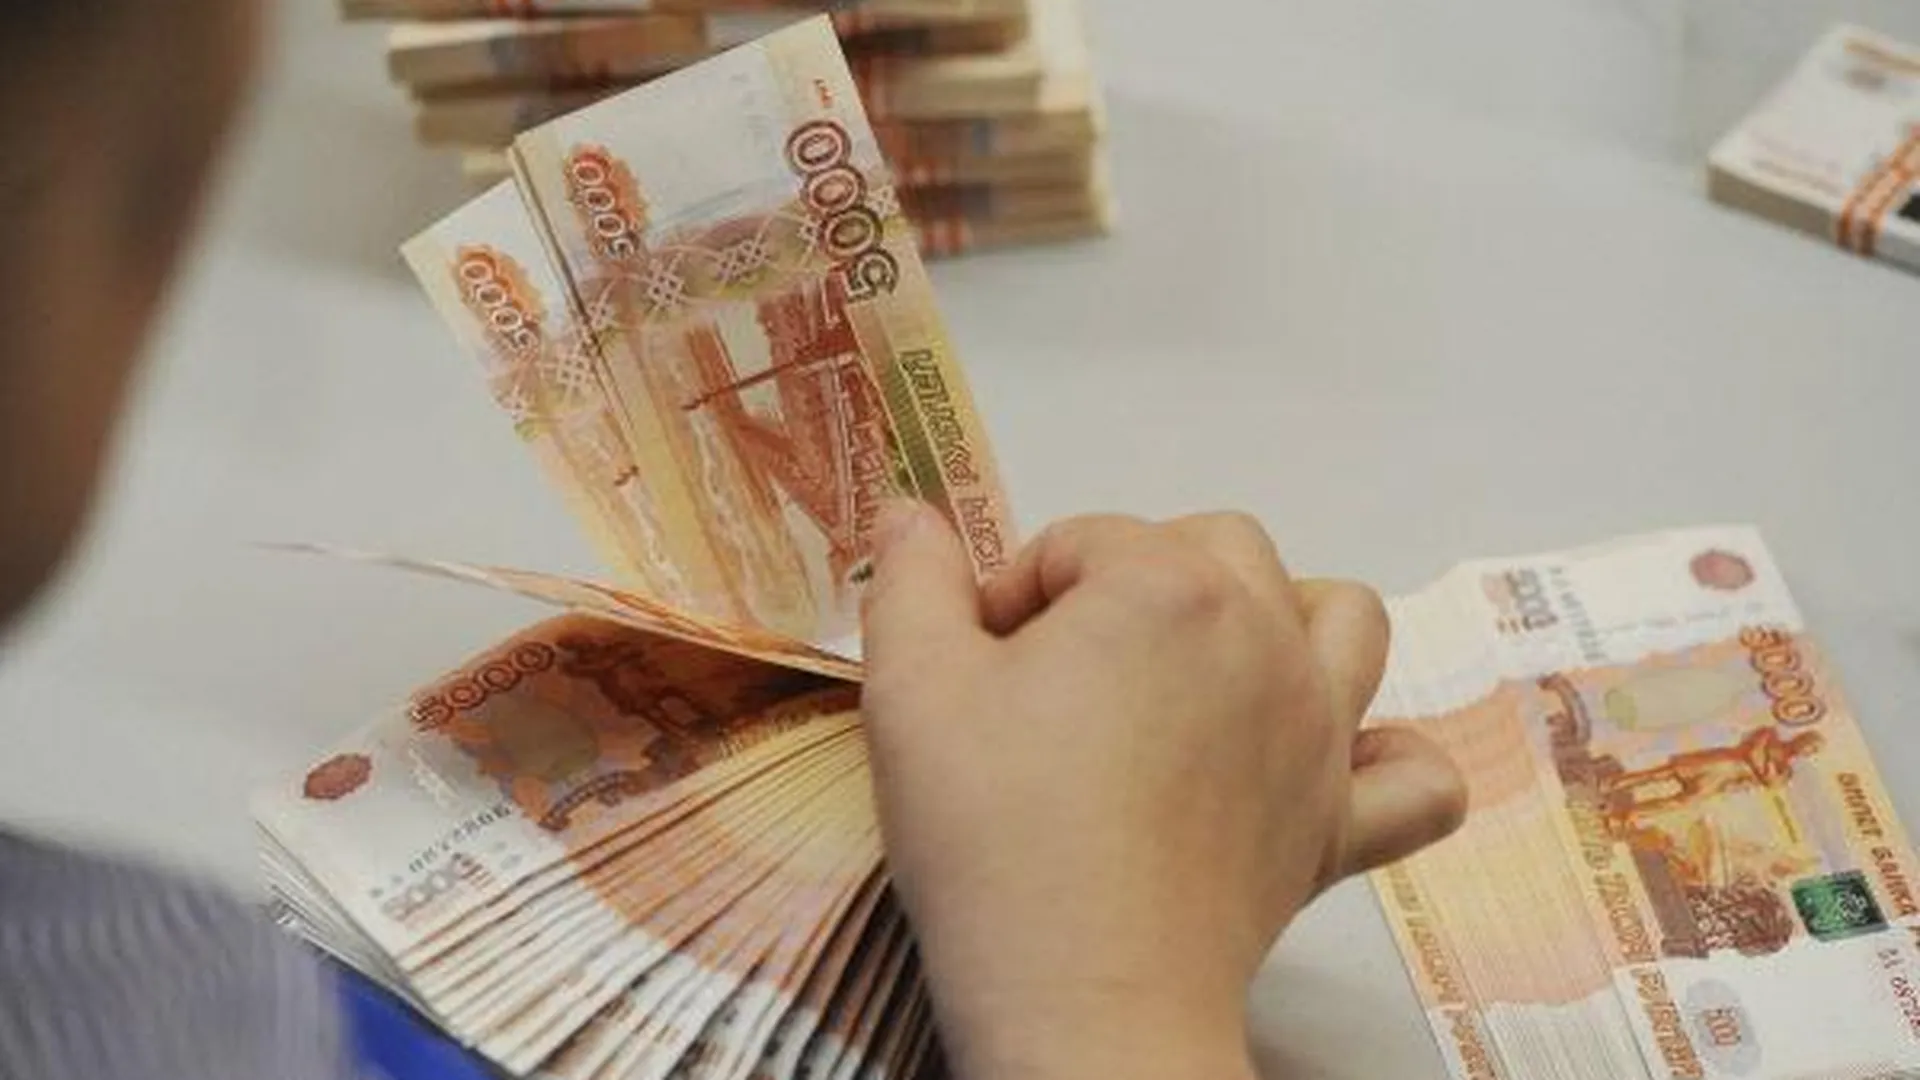 Средняя зарплата в МО составляет 40 тыс руб - Крымов